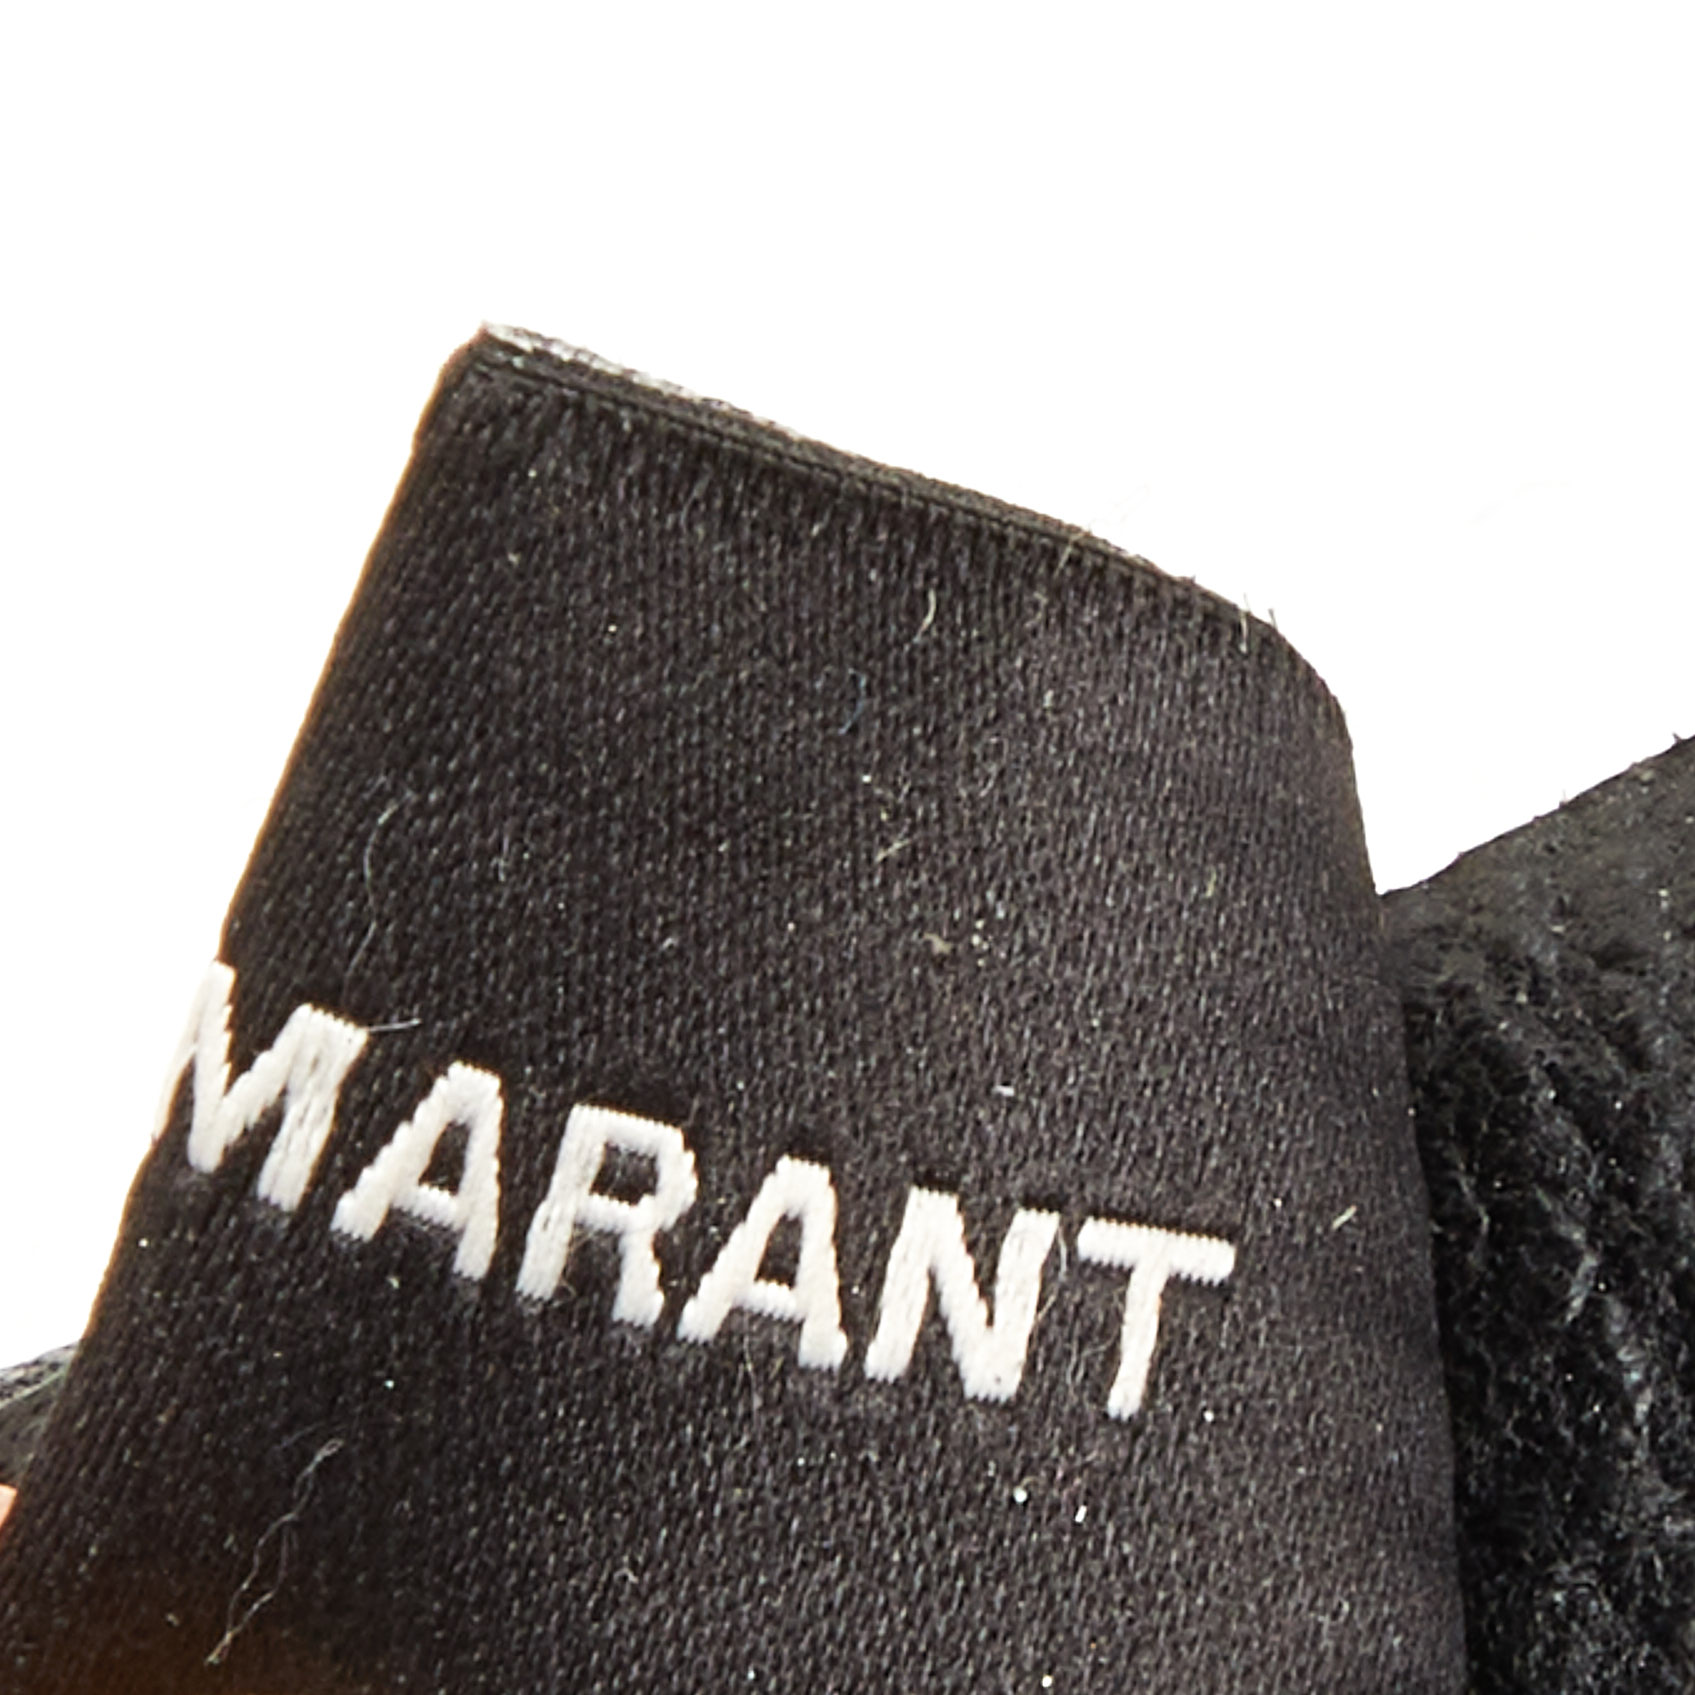 Isabel Marant Gold Metal Links Leather Buckle Belt